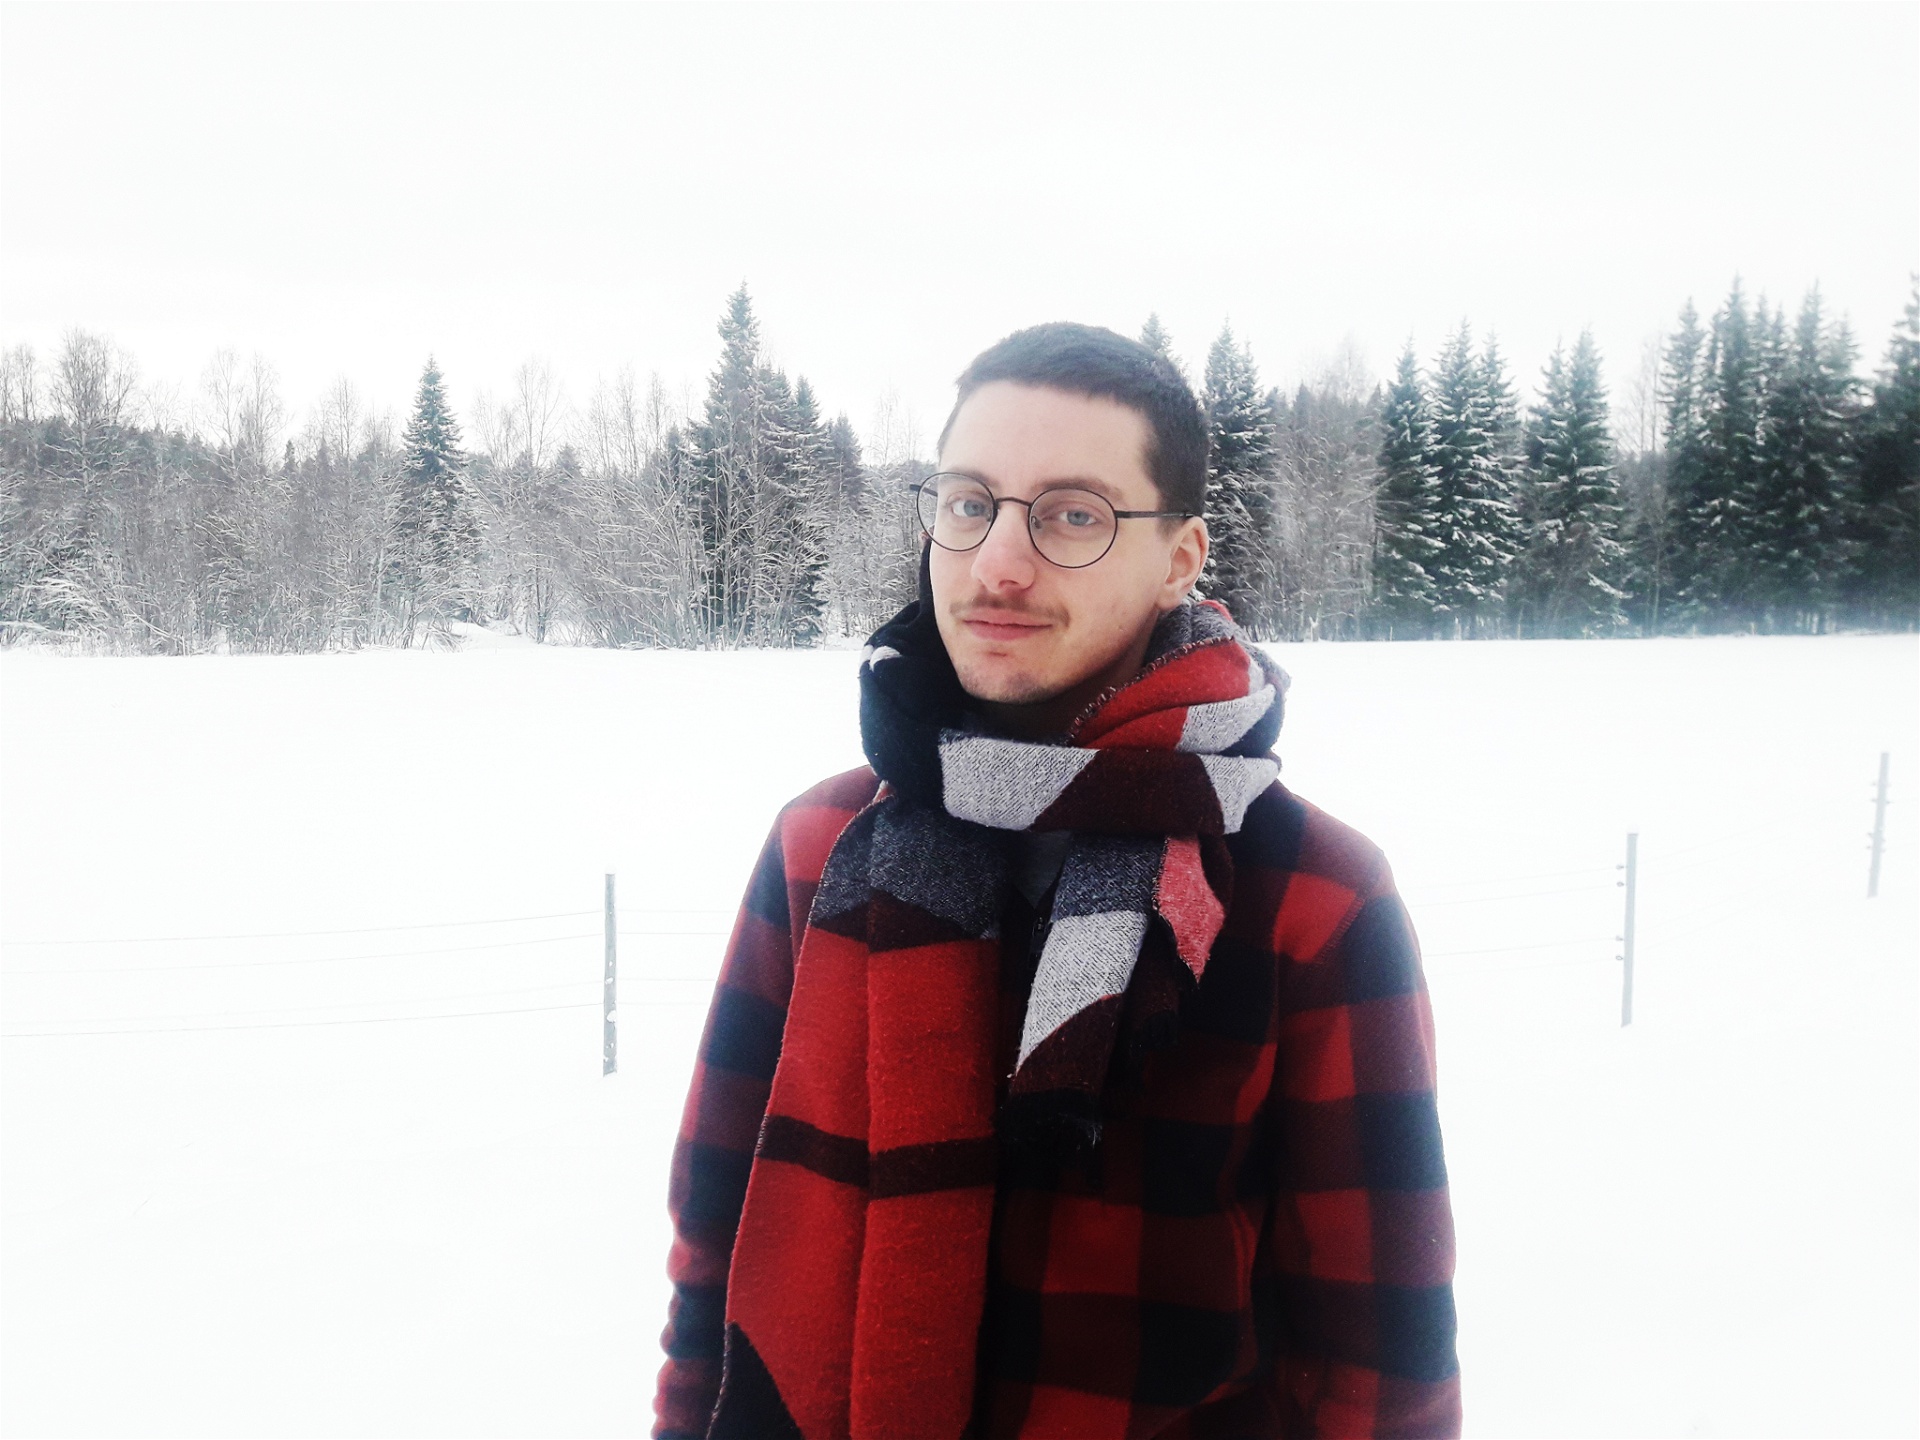 Nino Mick fotograferad i ett snöigt landskap med en stor halsduk runt halsen.